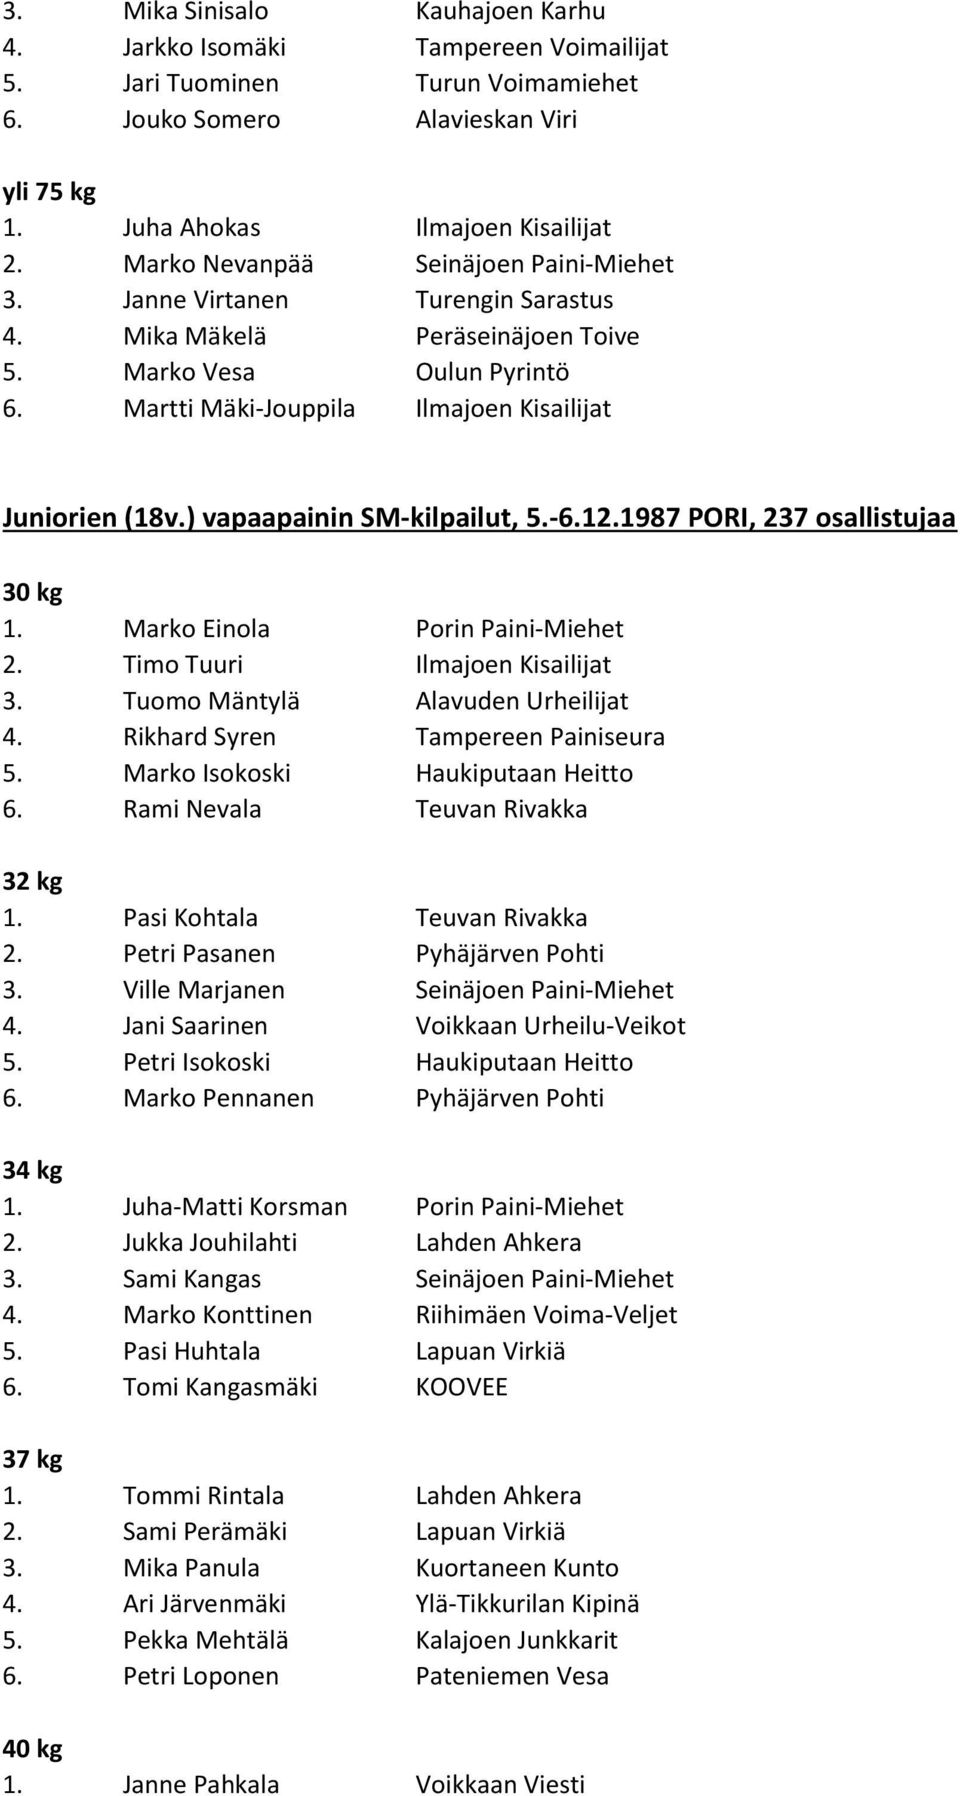 ) vapaapainin SM-kilpailut, 5.-6.12.1987 PORI, 237 osallistujaa 30 kg 1. Marko Einola Porin Paini-Miehet 2. Timo Tuuri Ilmajoen Kisailijat 3. Tuomo Mäntylä Alavuden Urheilijat 4.